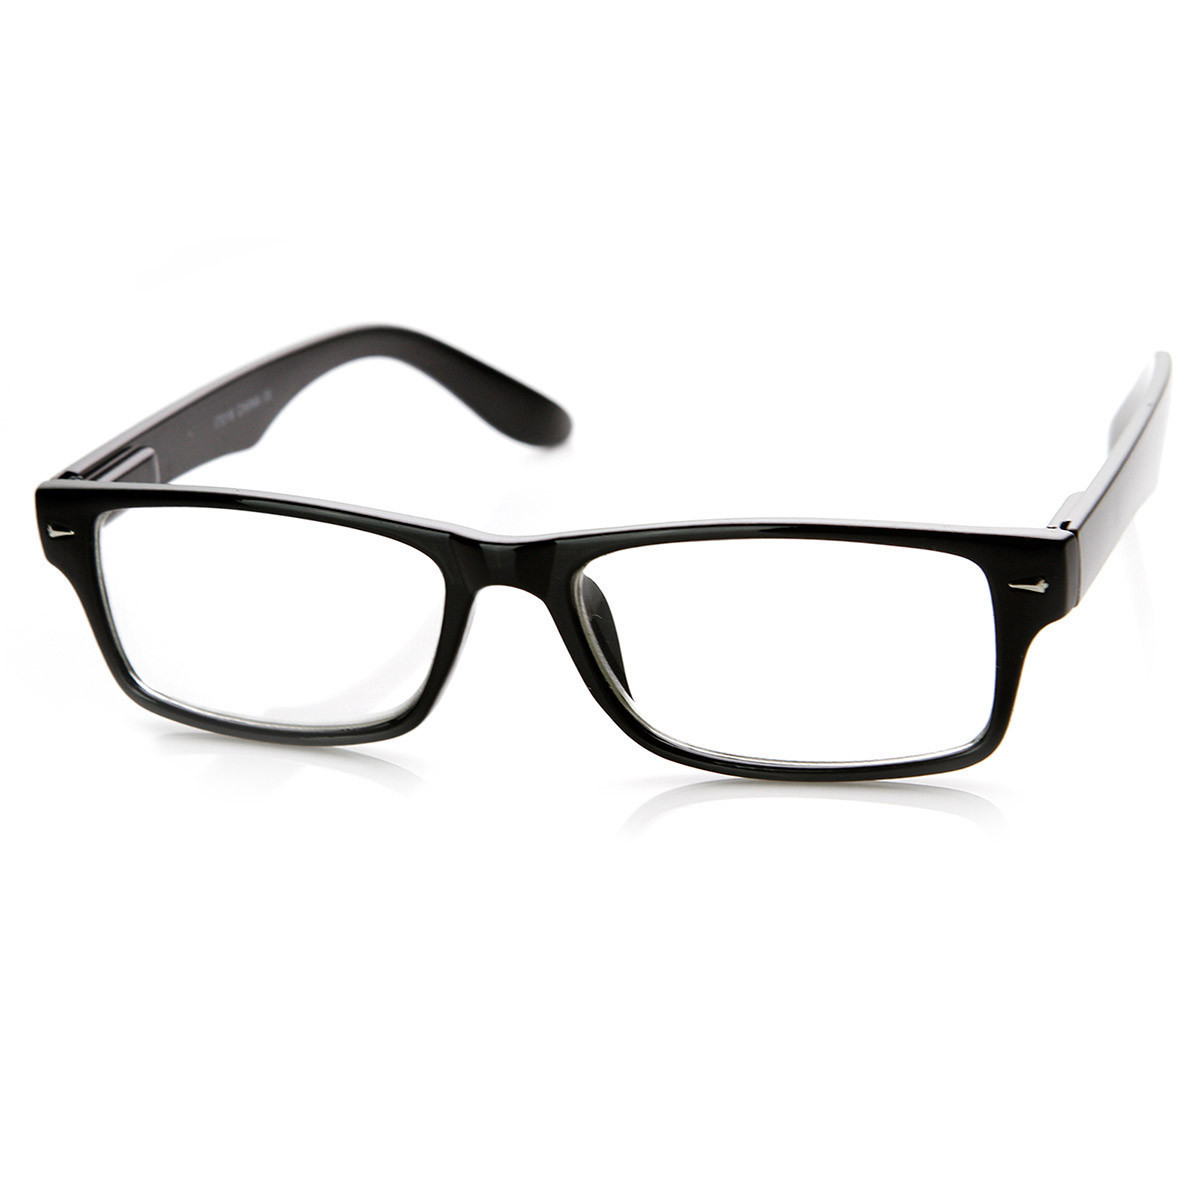 Casual Fashion Horned Rim Rectangular Frame Clear Lens Eye Glasses - 8715 - Tortoise